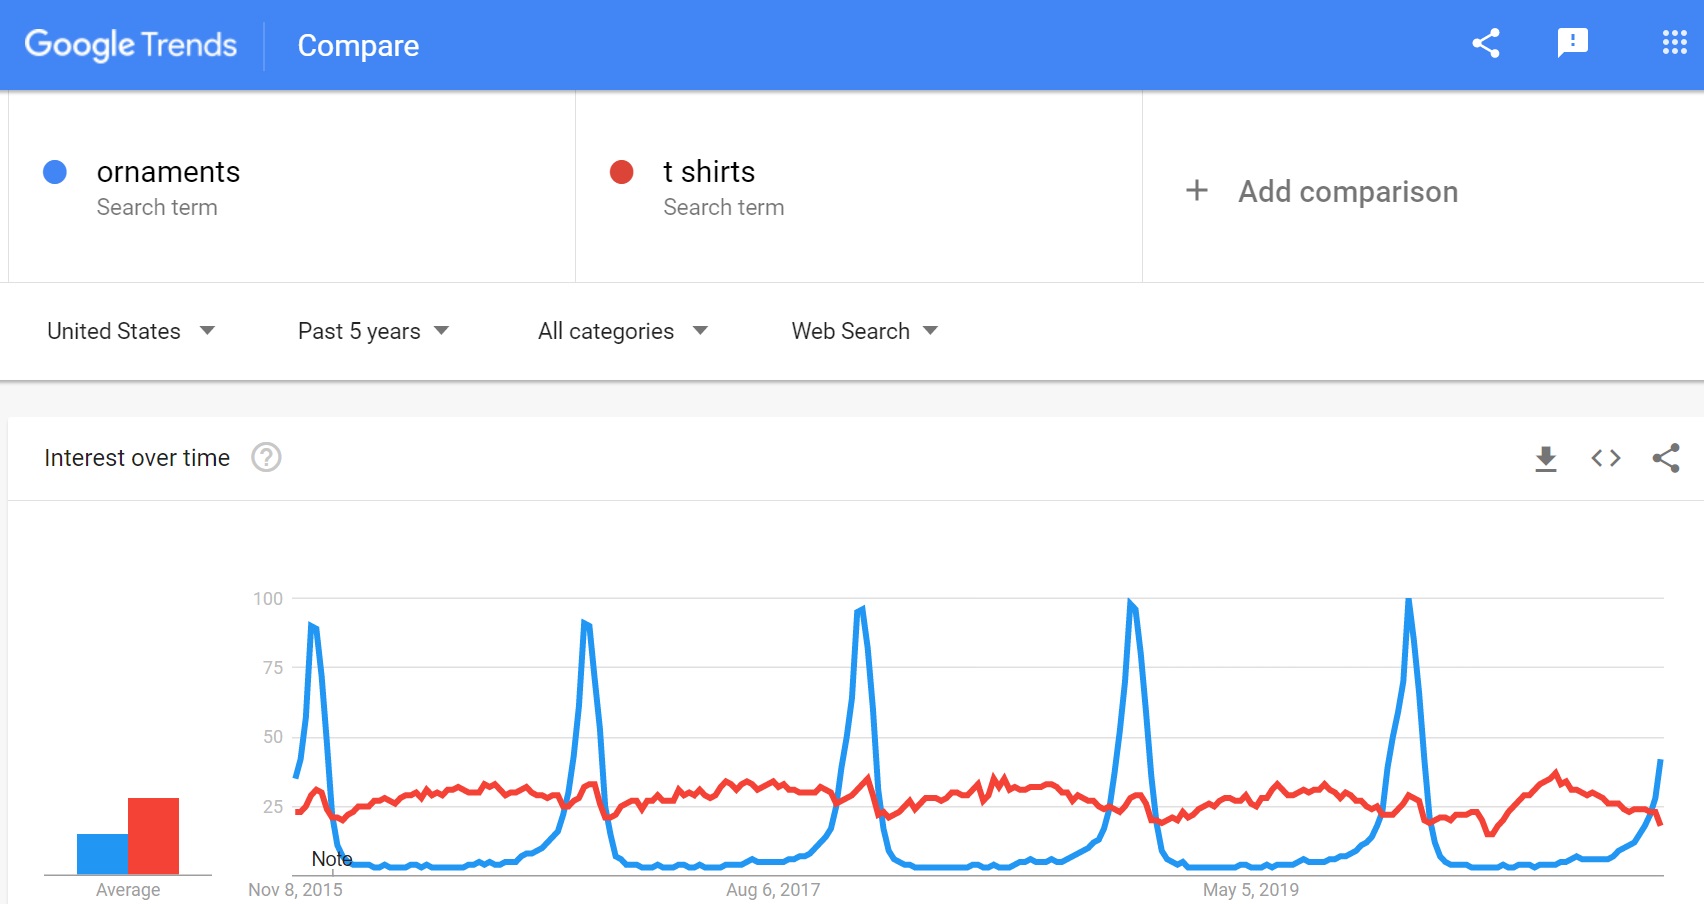 Kết quả Google Trends khi so sánh từ khóa “ornaments” và “t shirts”